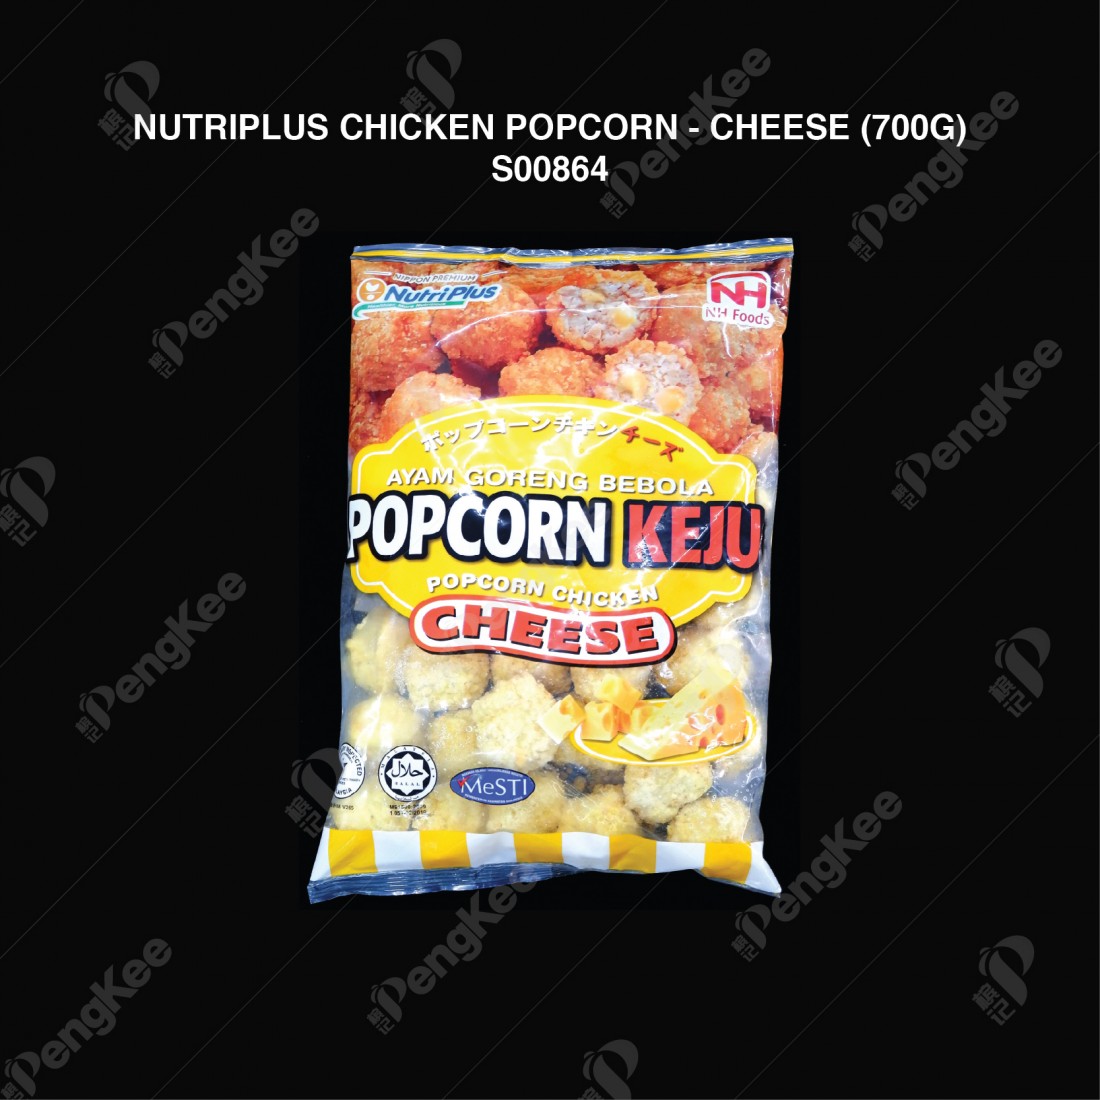 NUTRIPLUS CHICKEN POPCORN - CHEESE (700G)